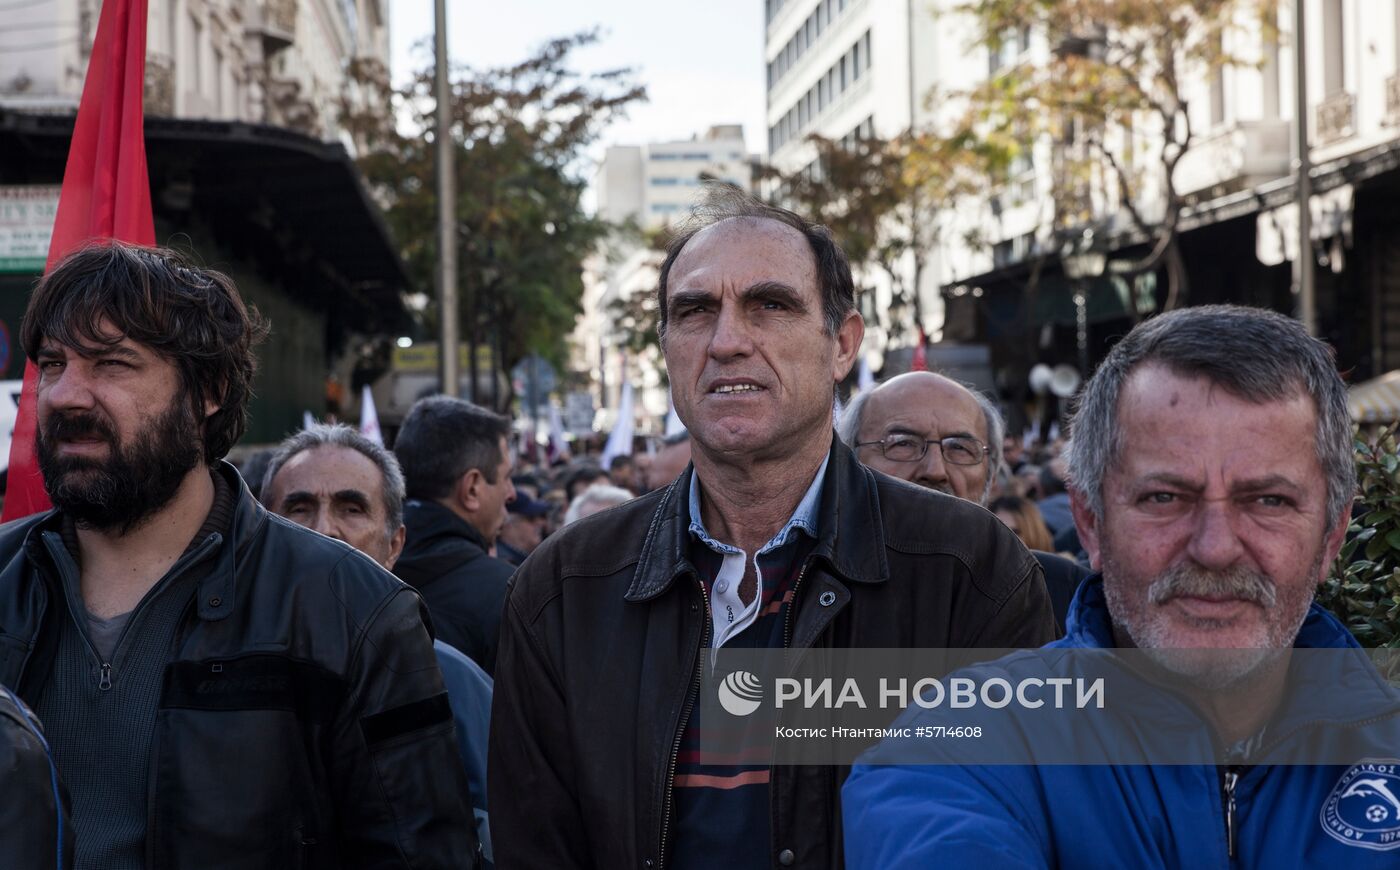 Всеобщая забастовка в Греции